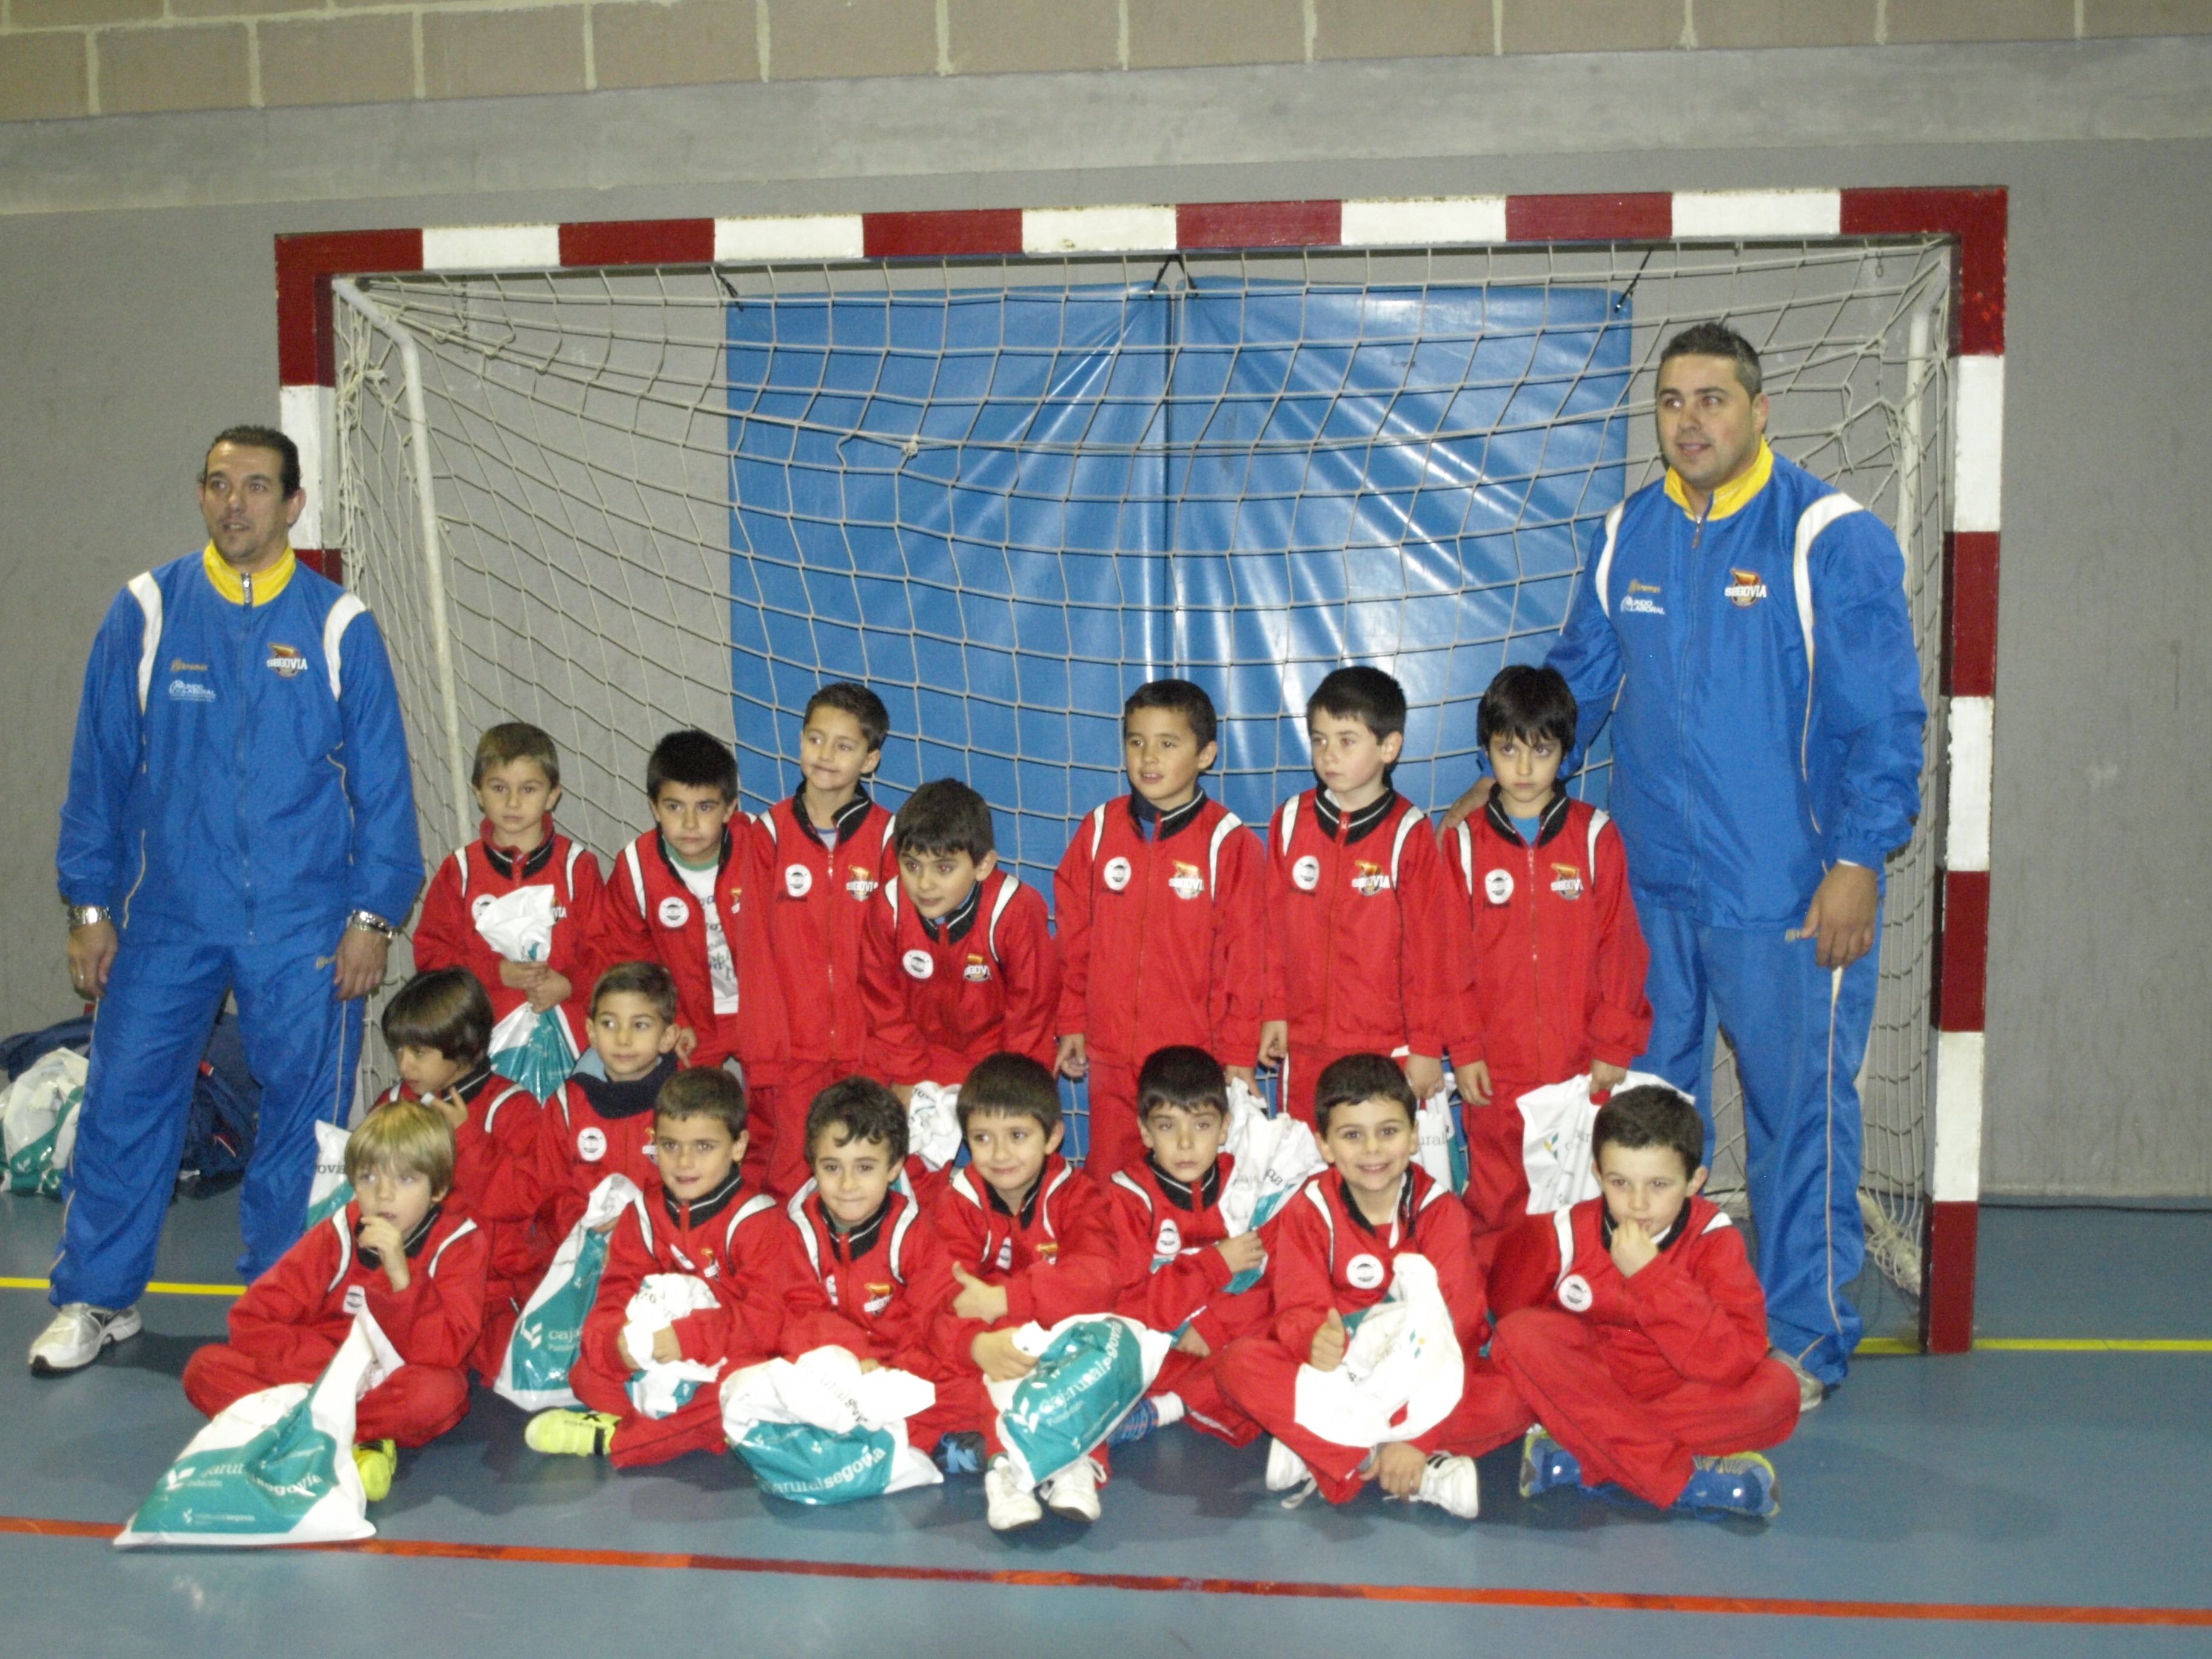 Los éxitos de la semana pasada, el Segovia Futsal afronta con optimismo los próximos retos